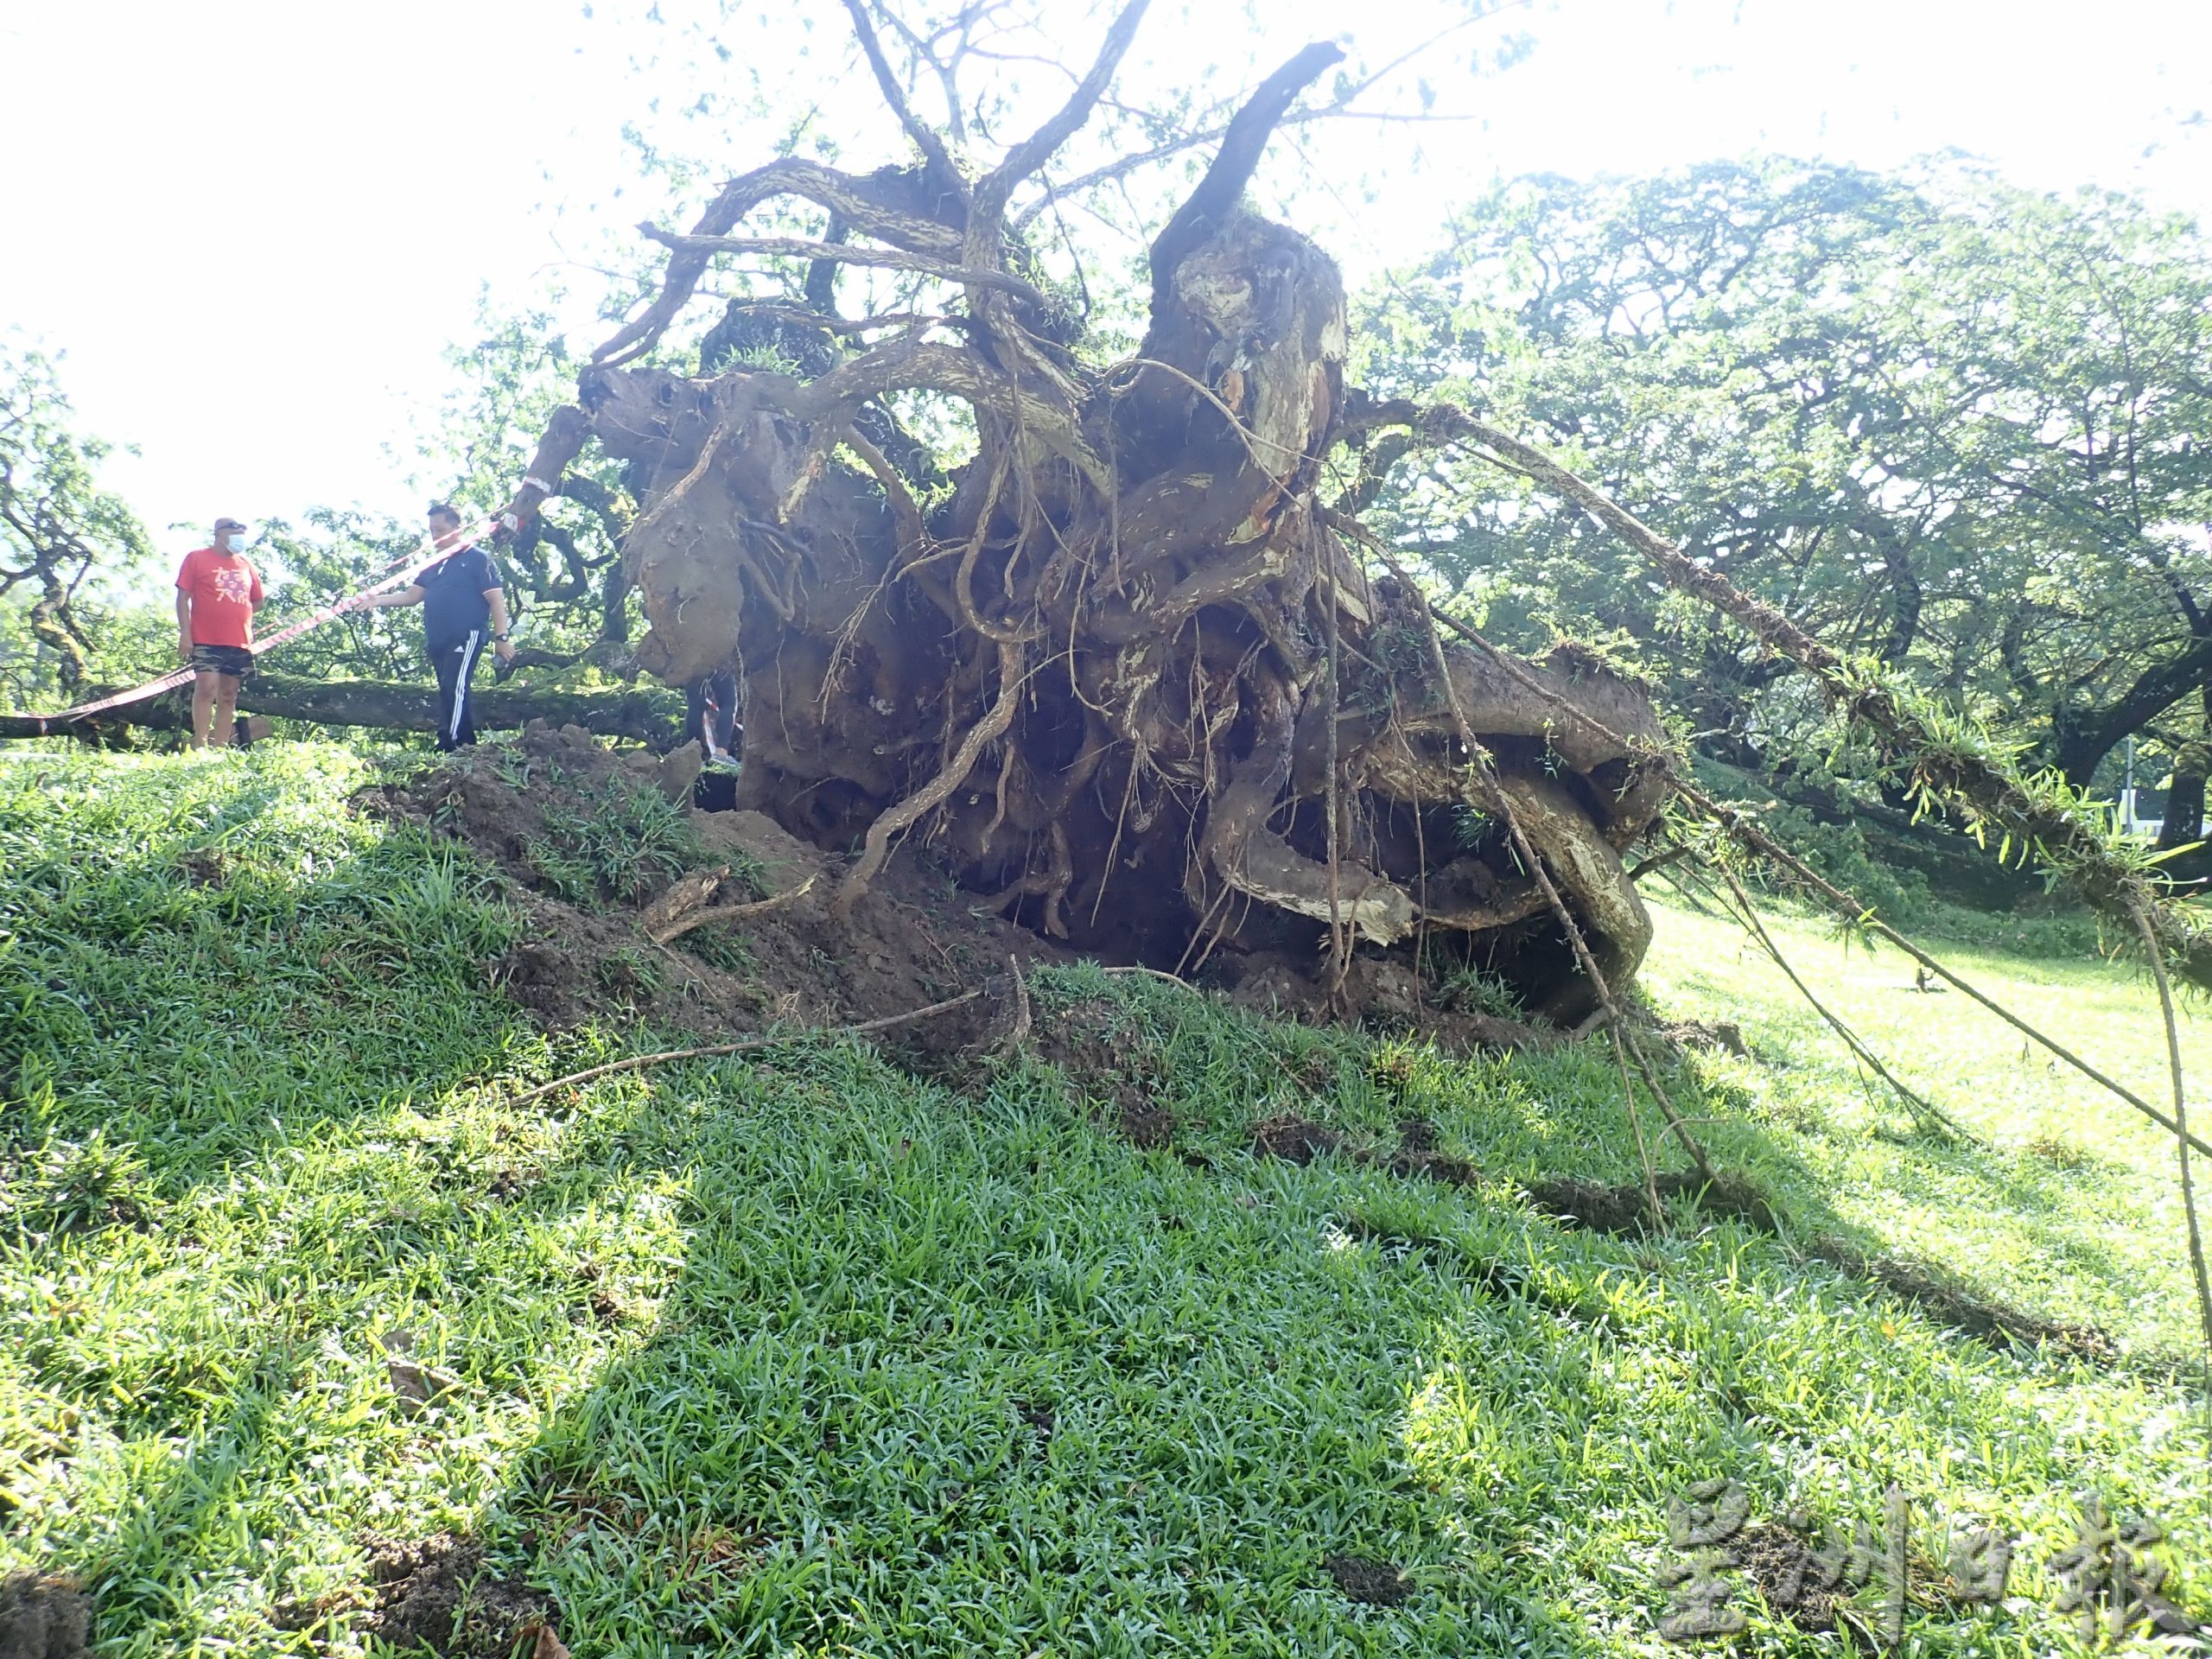 太平湖步行道百年雨树 遭风雨袭倒